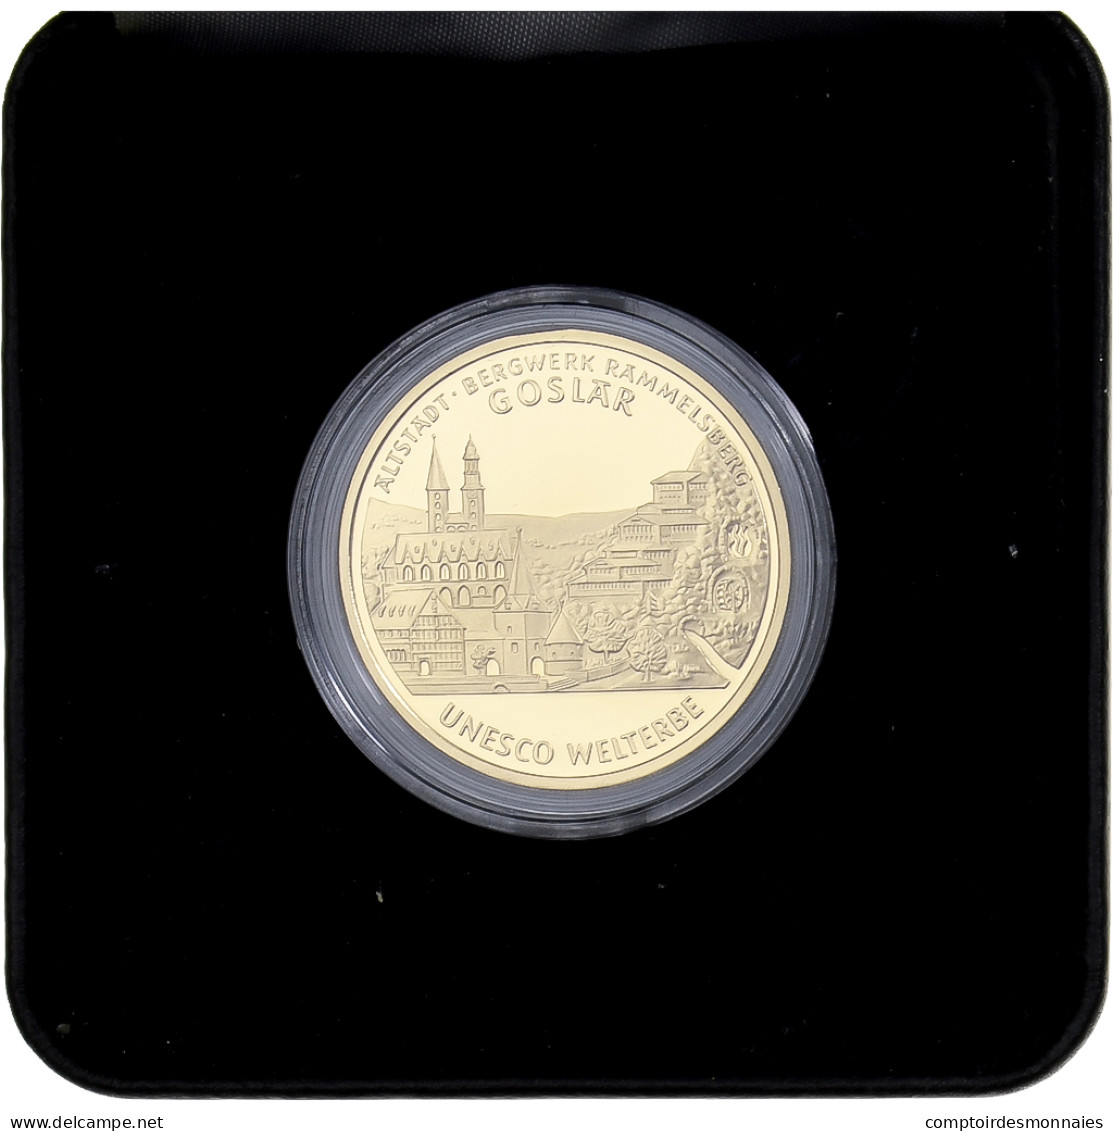 Allemagne, 100 Euro, Goslar, BE, 2008, Or, FDC, KM:270 - Allemagne